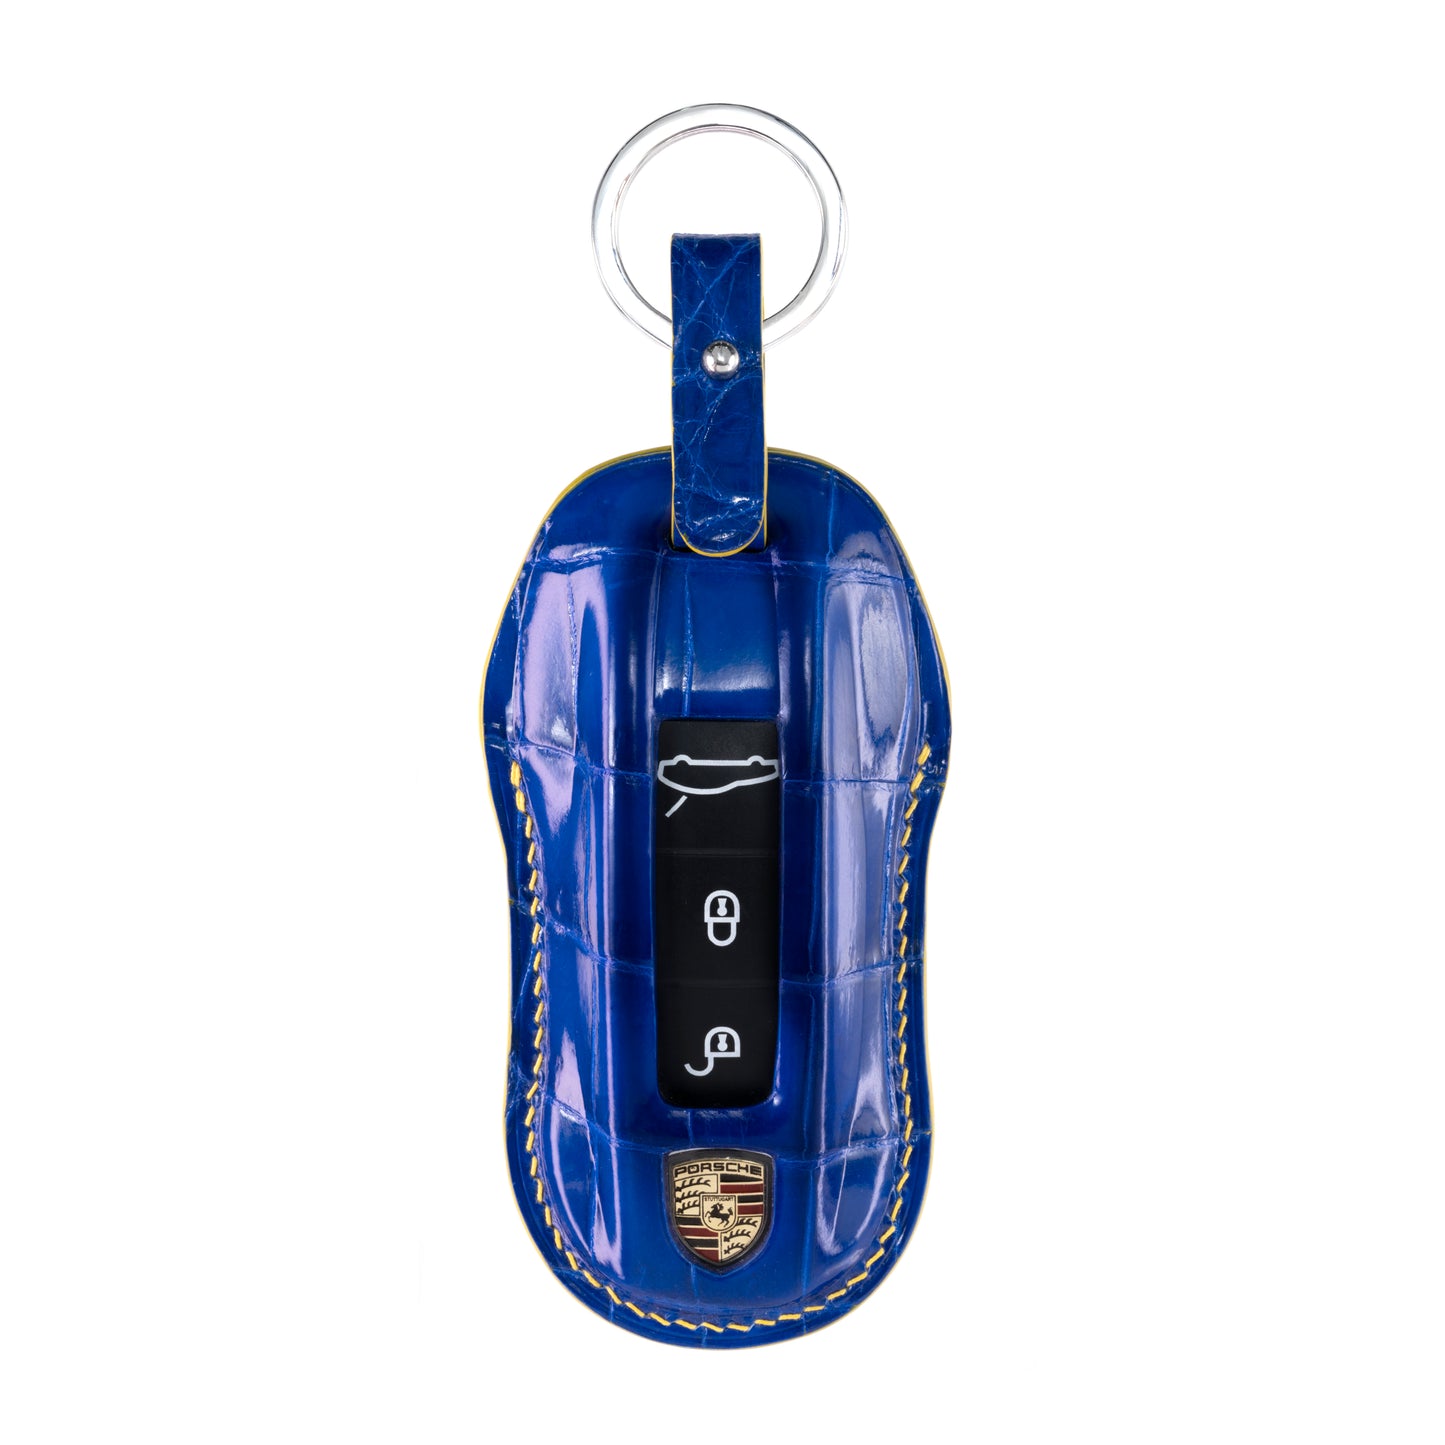 Porsche New Key Fob Cover in Blue Crocodile